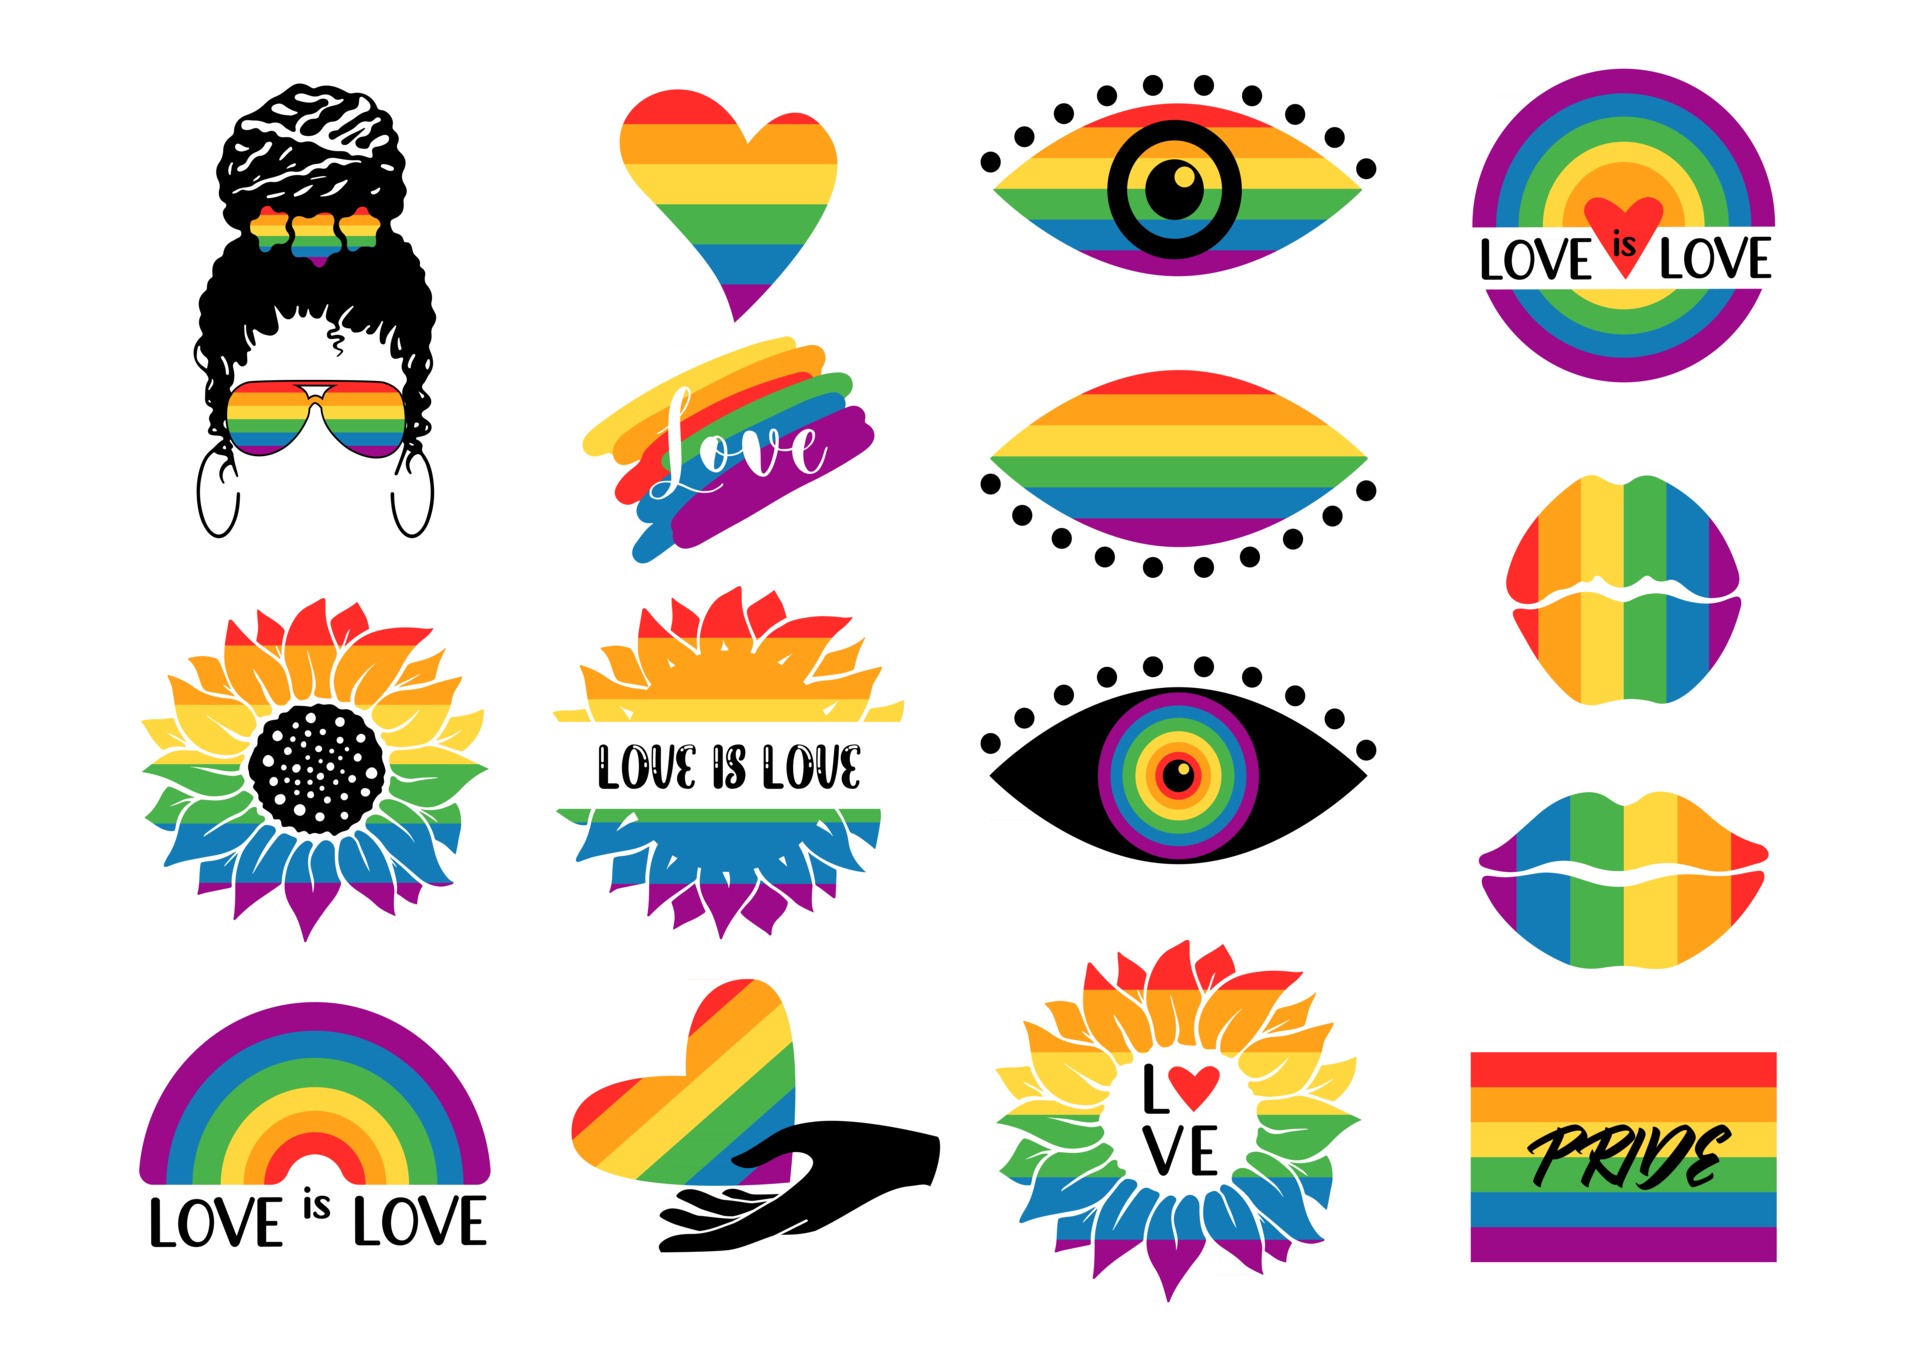 Cùng tỏa sáng và gửi thông điệp yêu thương đến cộng đồng LGBTQ với những biểu tượng đầy ý nghĩa và sắc màu. Để tôn lên sự đa dạng và phối hợp giữa tất cả mọi người. ( Let\'s shine and send messages of love to the LGBTQ community with meaningful and colorful symbols. To celebrate diversity and collaboration among everyone.)